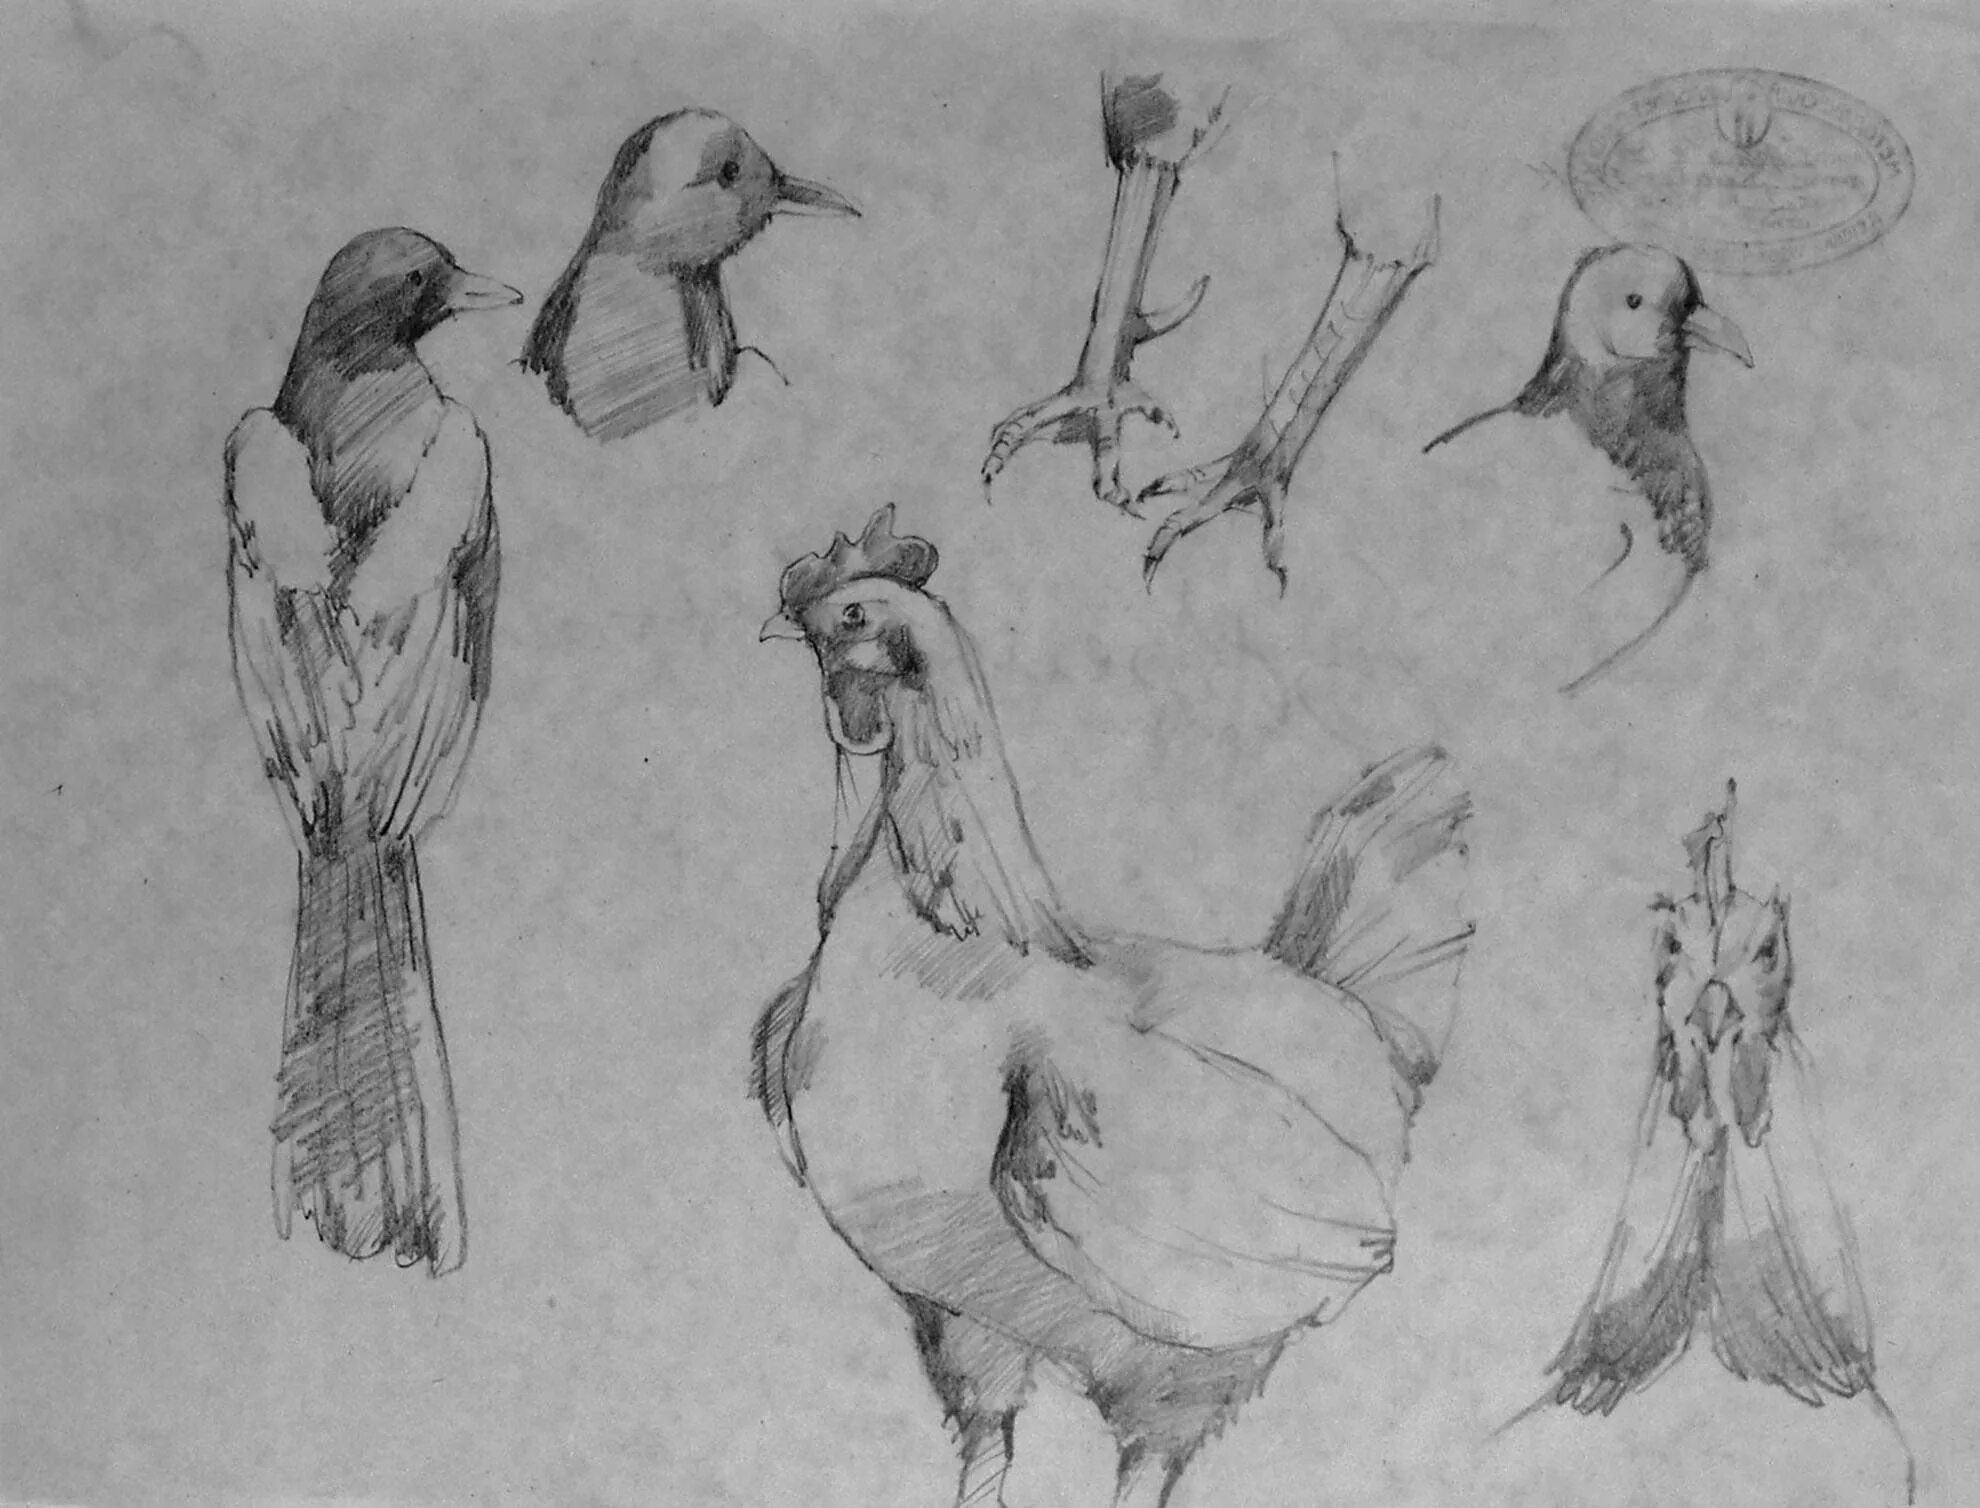 Натур птица. Зарисовки птиц. Наброски и зарисовки птиц. Этюды и зарисовки животных и птиц. Курица набросок.